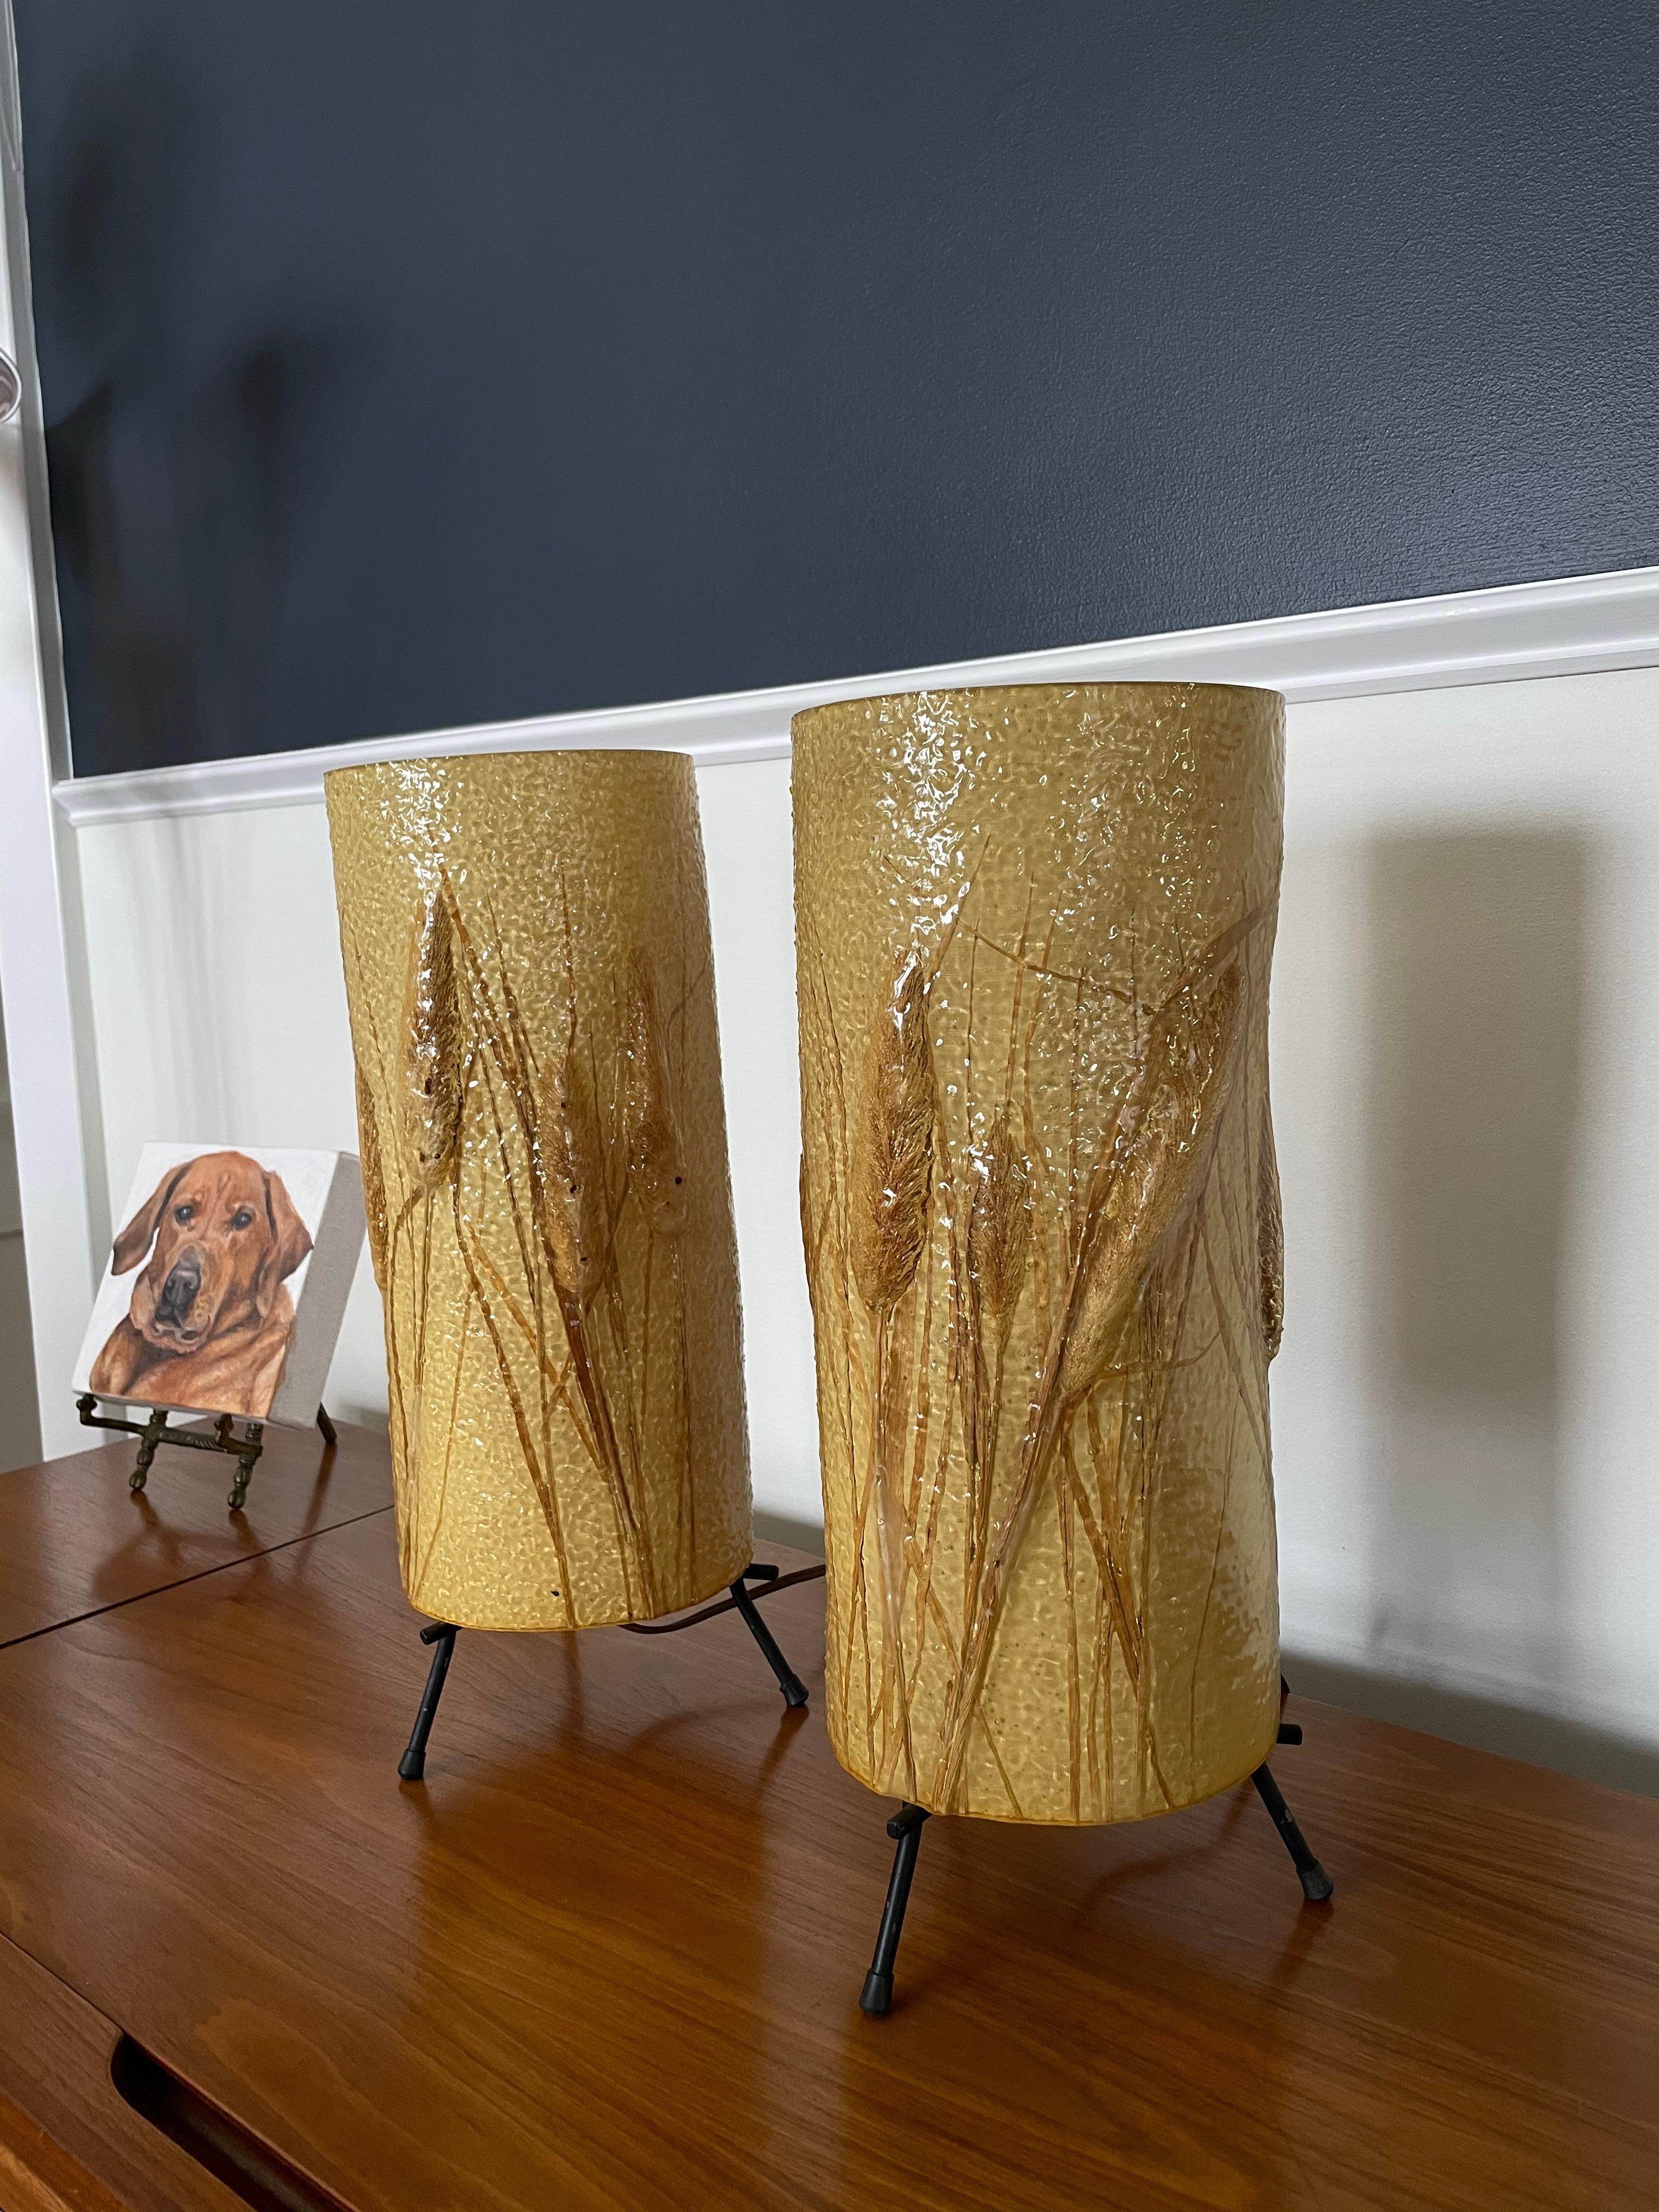 Superbes lampes à queue de chat du milieu du siècle, fabriquées à partir d'un matériau en caoutchouc texturé enveloppant un intérieur en toile. Cylindrique pour un effet à 360 degrés. Des graphismes et une luminosité superbes.